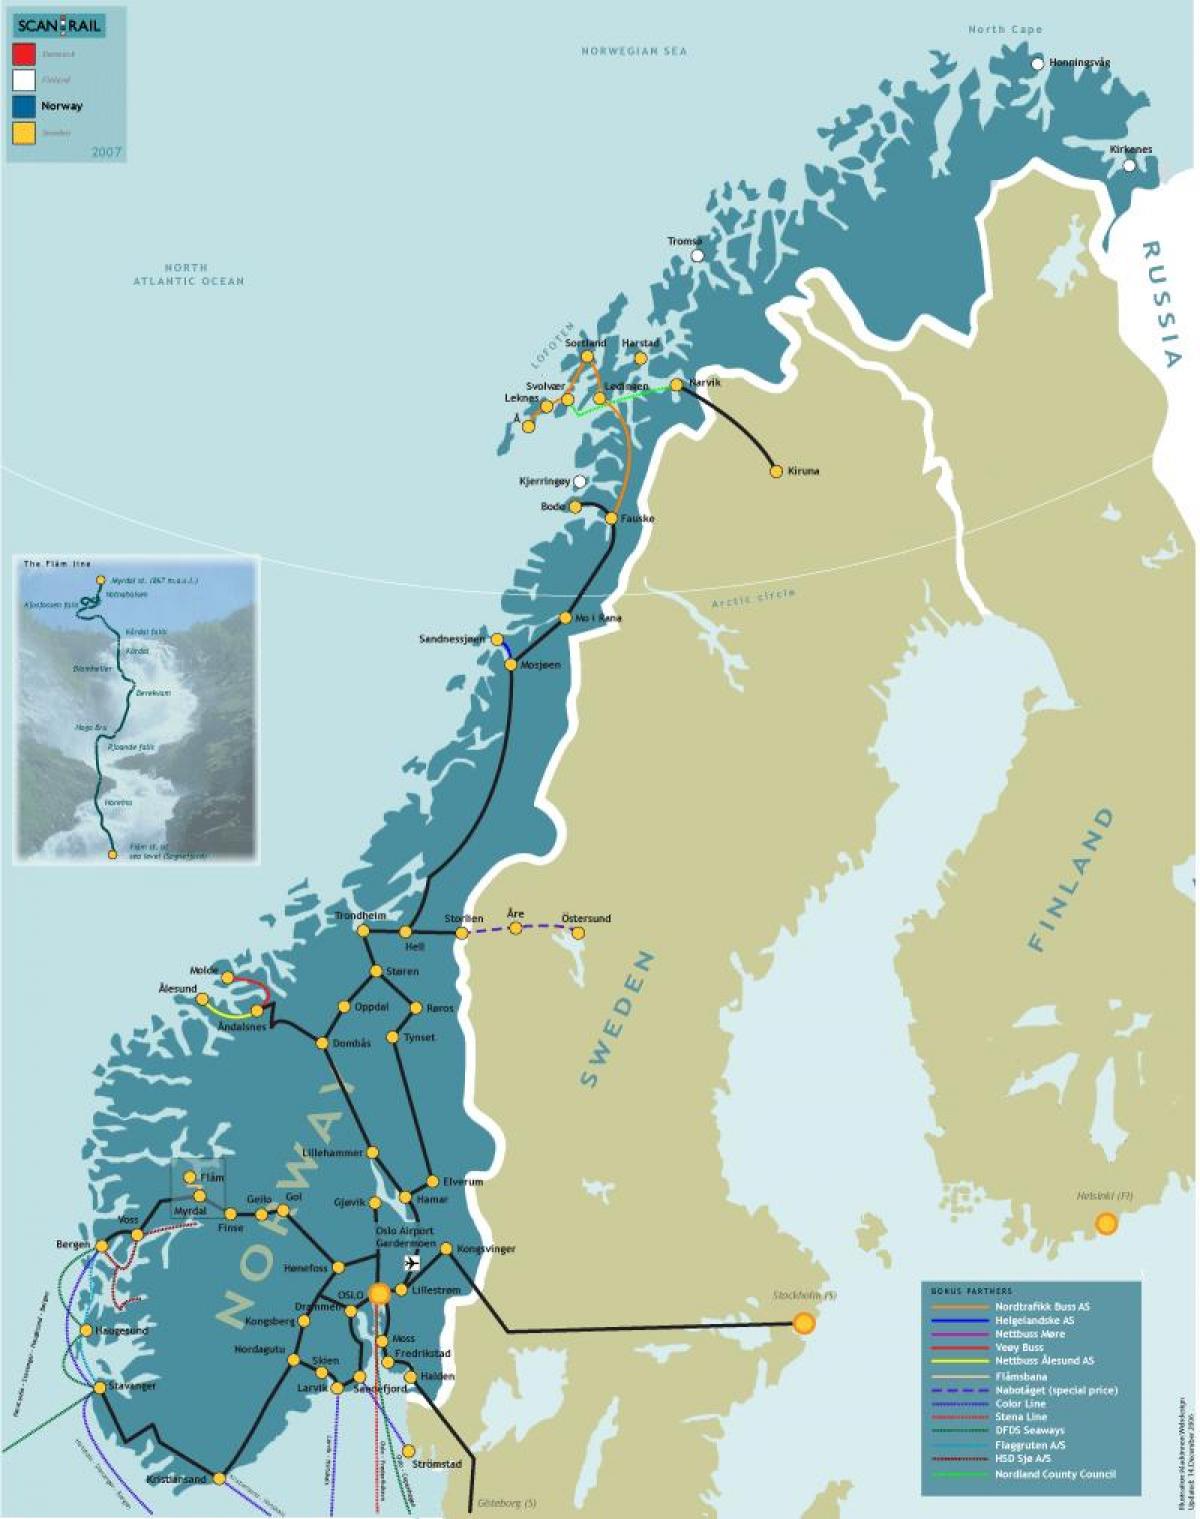 नॉर्वे रेल मानचित्र